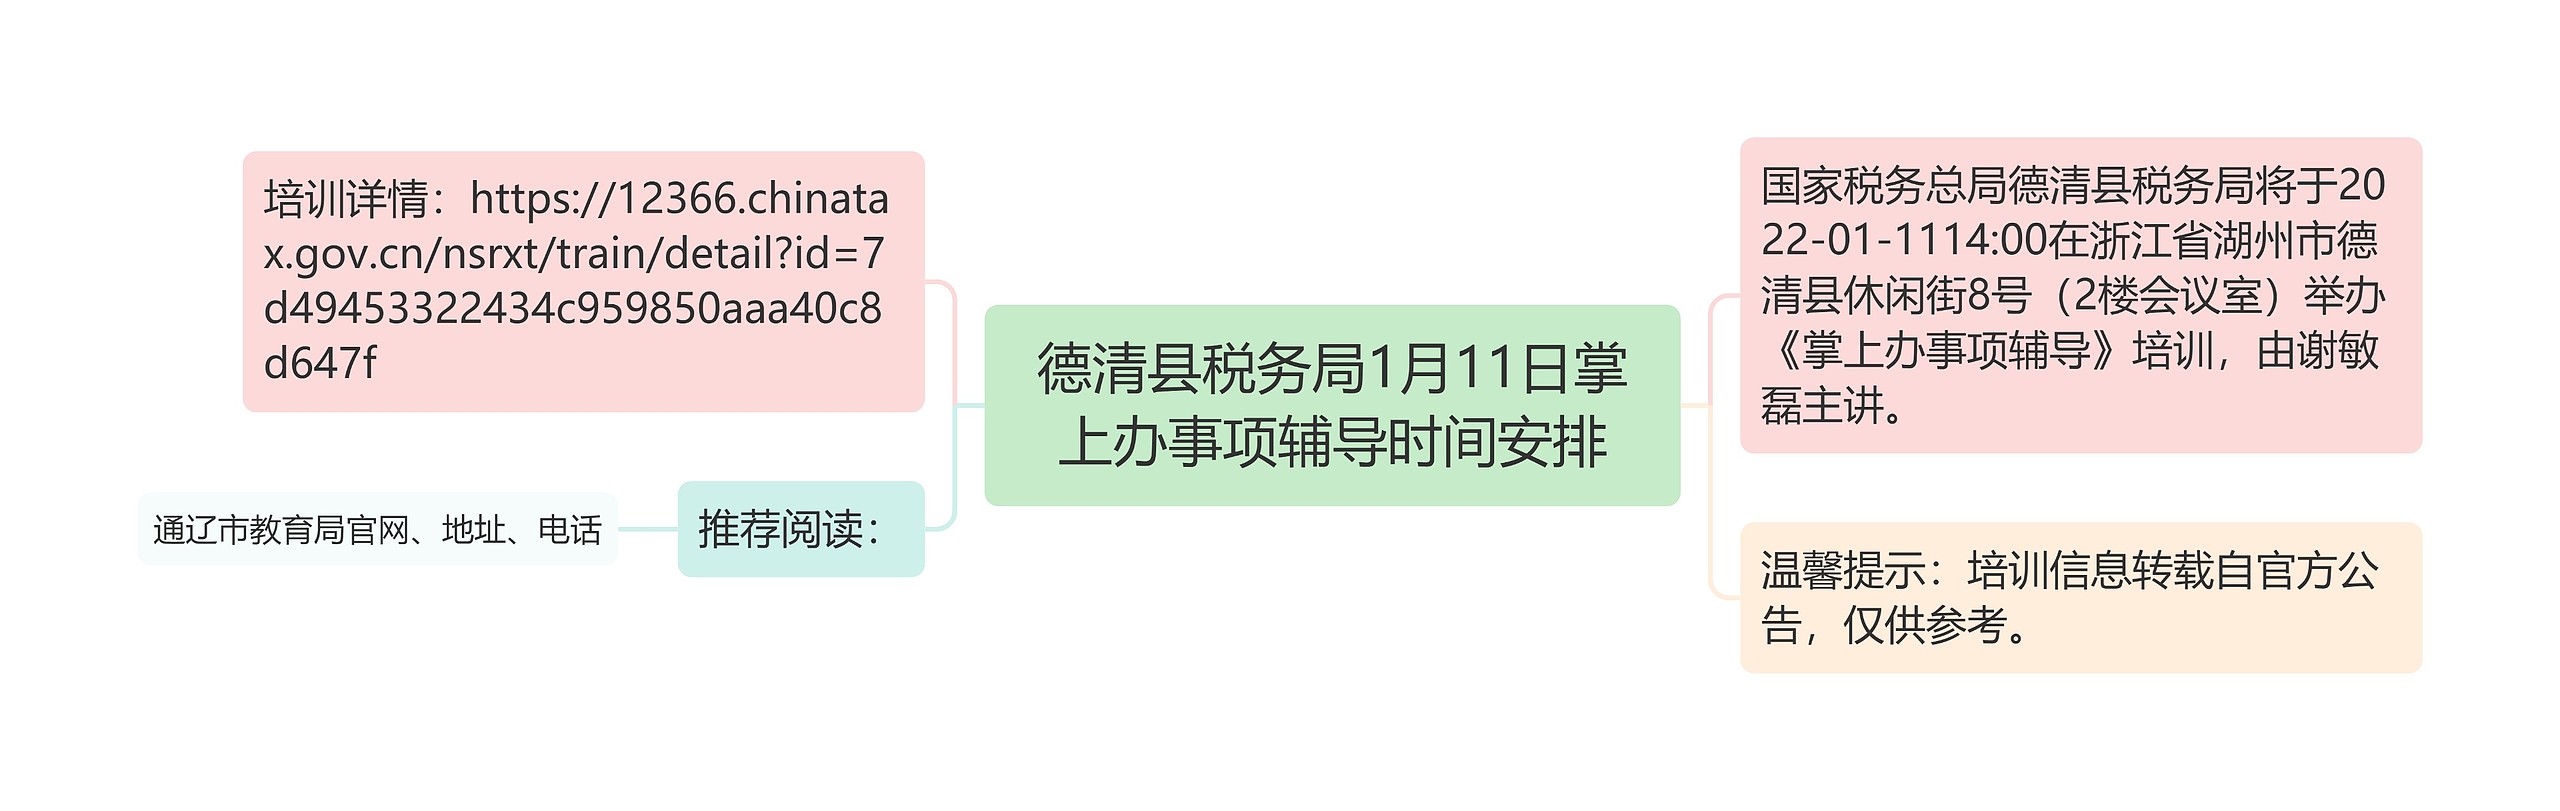 德清县税务局1月11日掌上办事项辅导时间安排